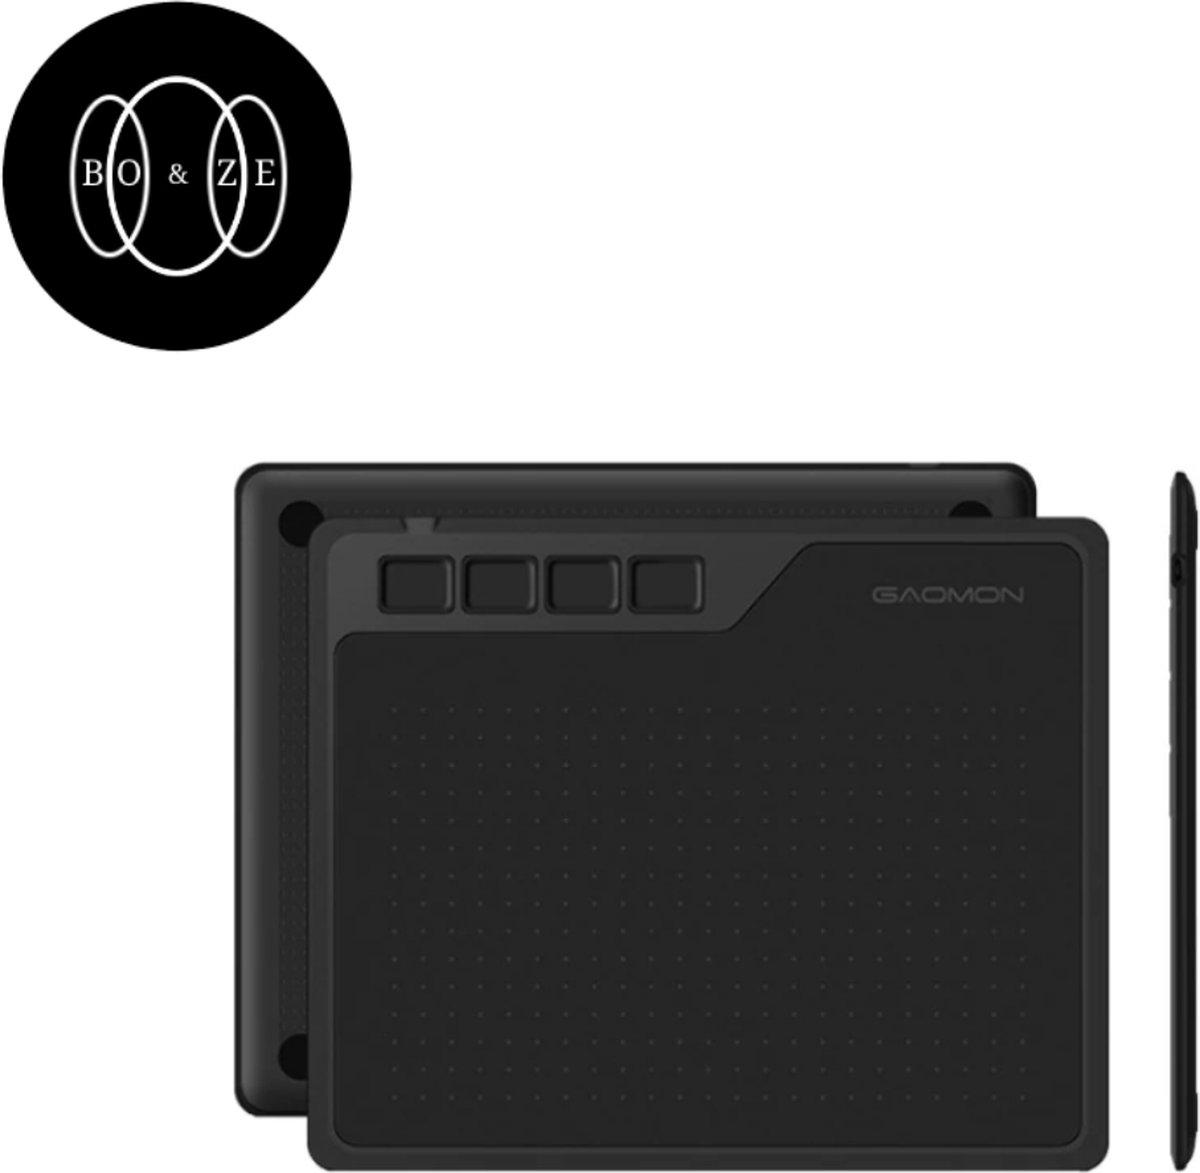 Boze Gaomon - TekenTablet - Grafische Tablet - Zwart